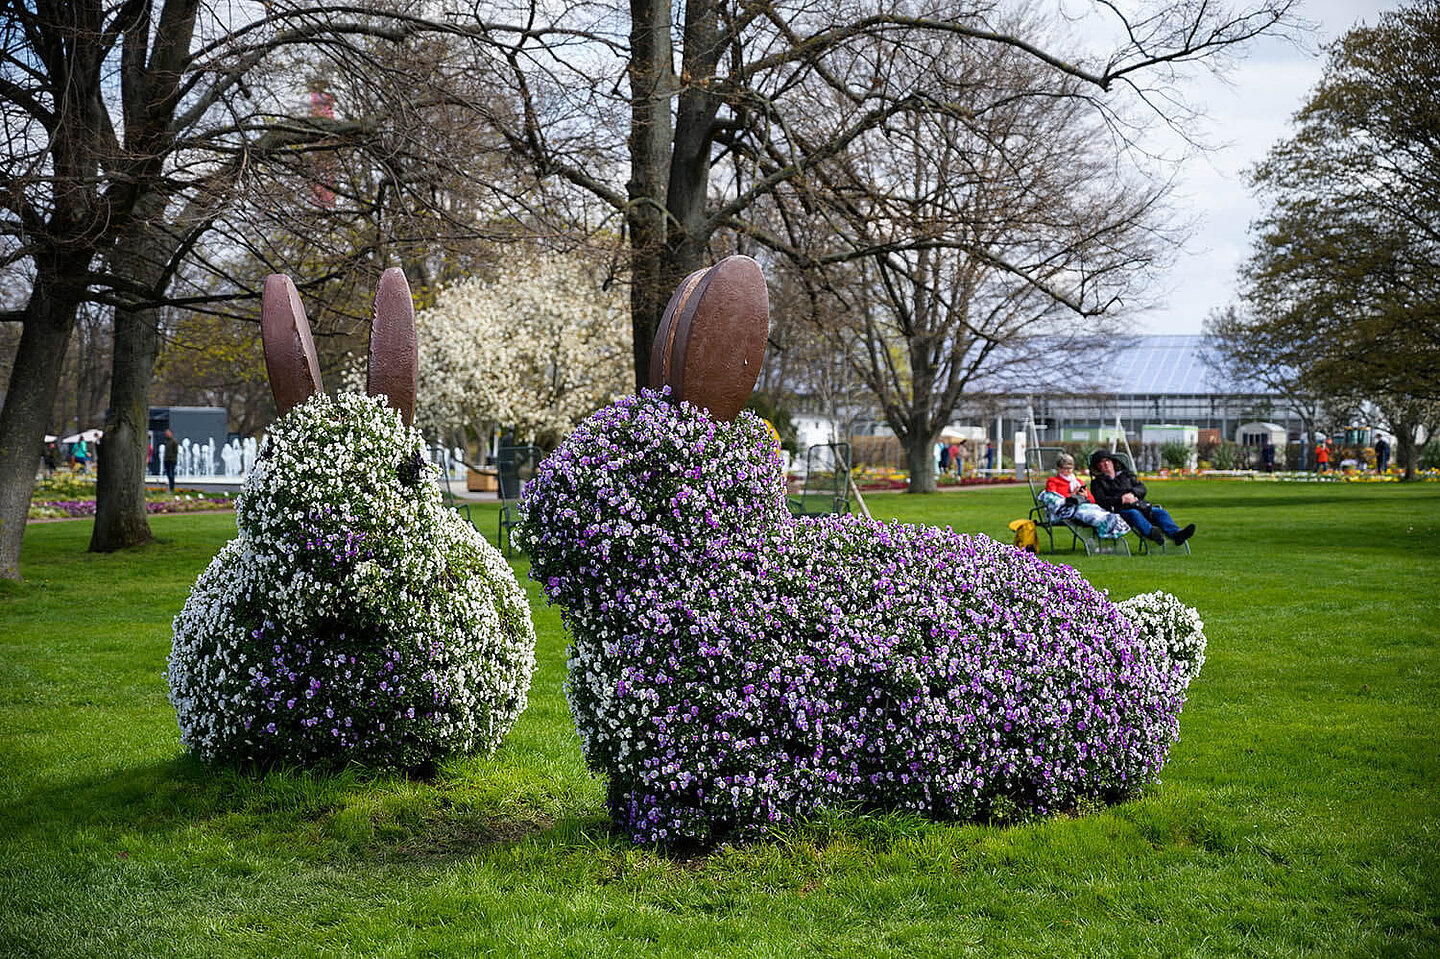 Hasenfiguren aus Blumen. Im Hintergrund Menschen auf Liegestühlen auf einer Wiese